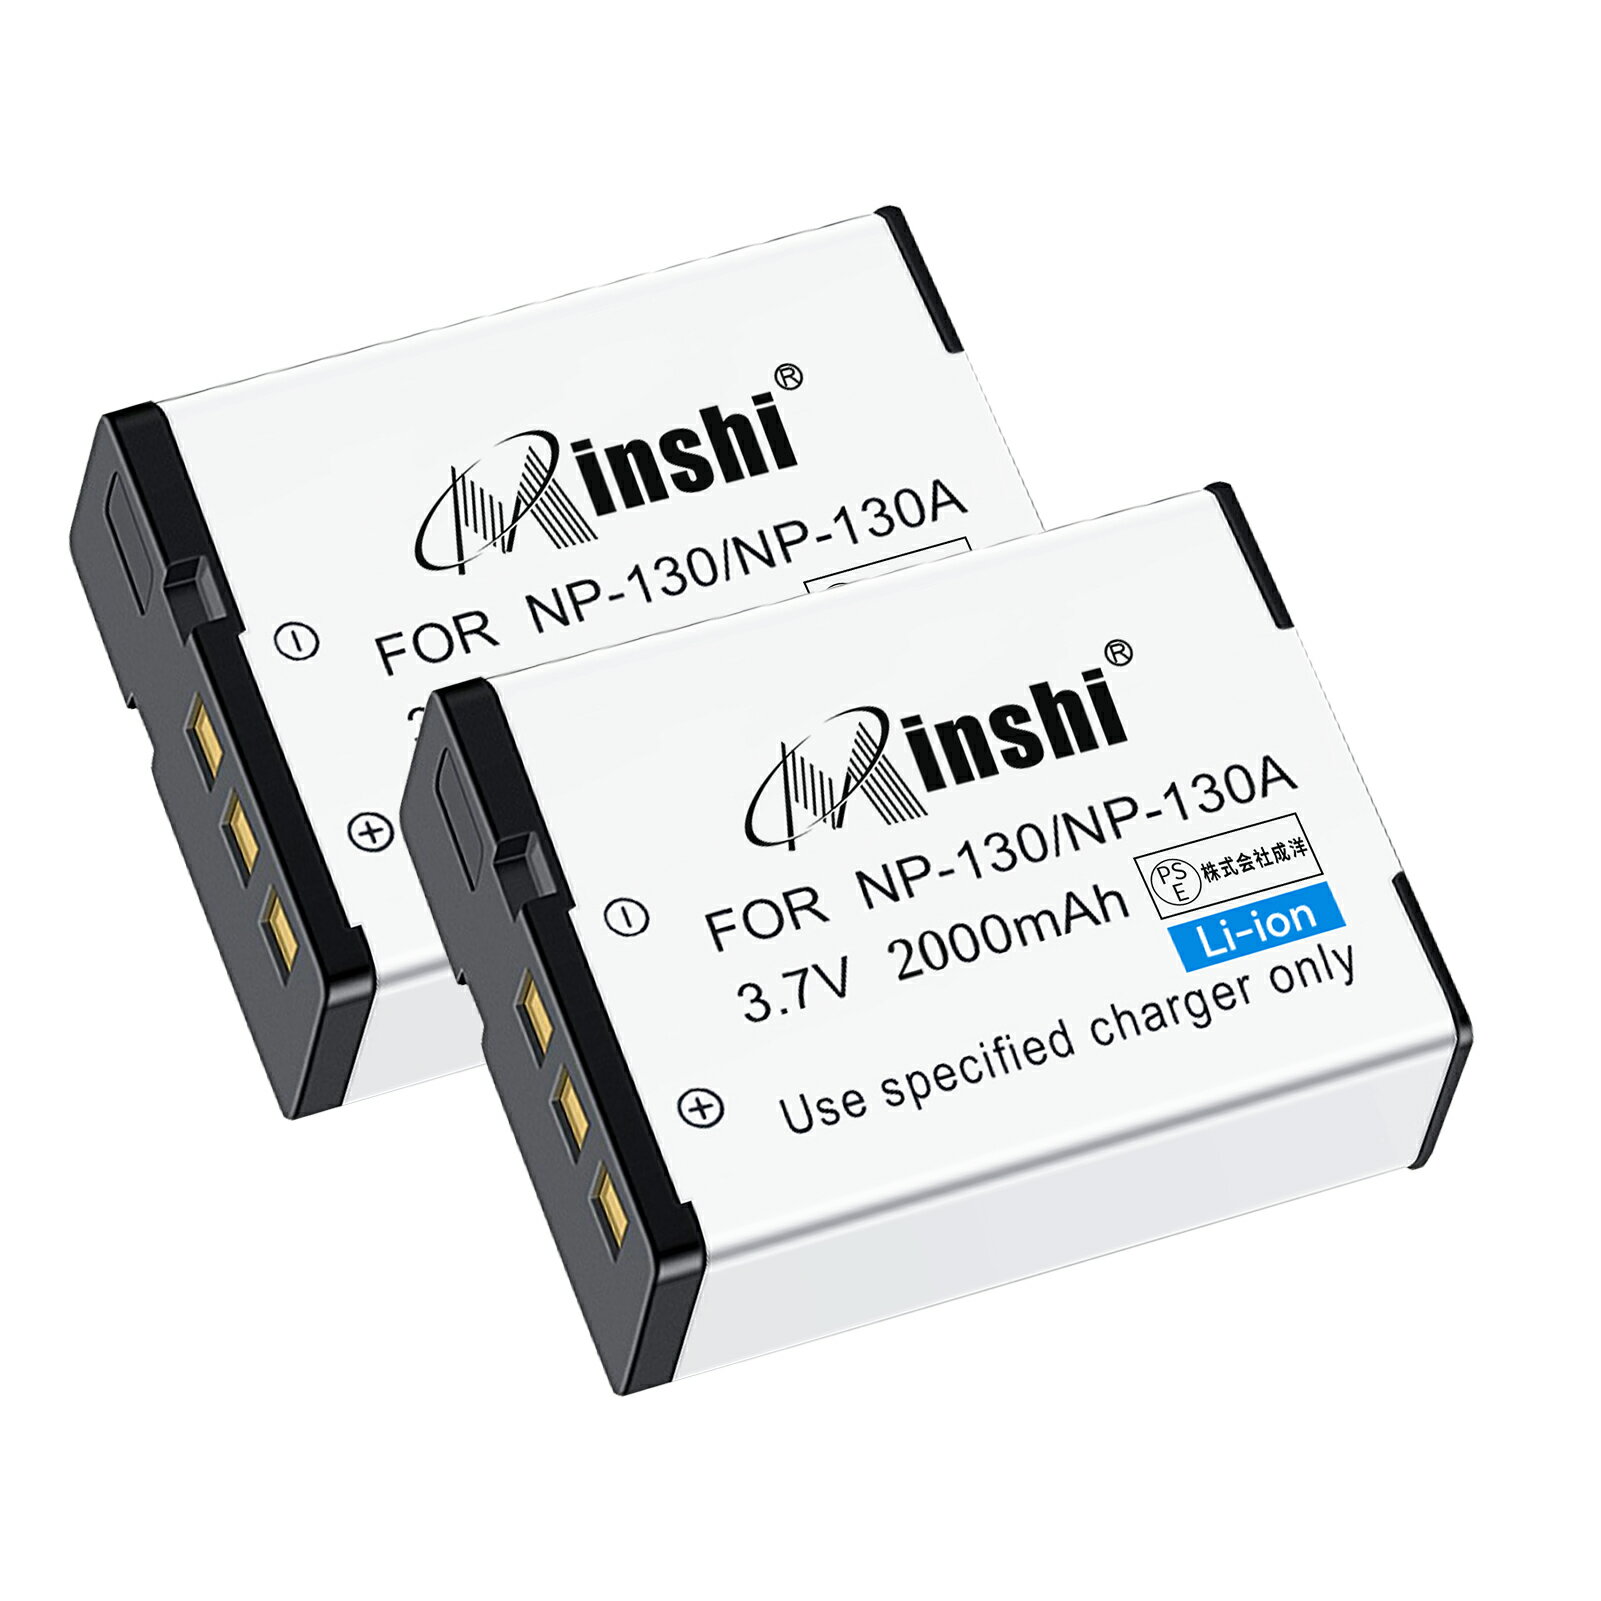 【2個セット】minshi 新品 Casio EX-ZR100 互換バッテリー 2000mAh 高品質交換用リチャージブル カメラバッテリー リチウムイオンバッテリー デジタルカメラ デジカメ 充電池 PSE認証 1年間保証 予備バッテリー